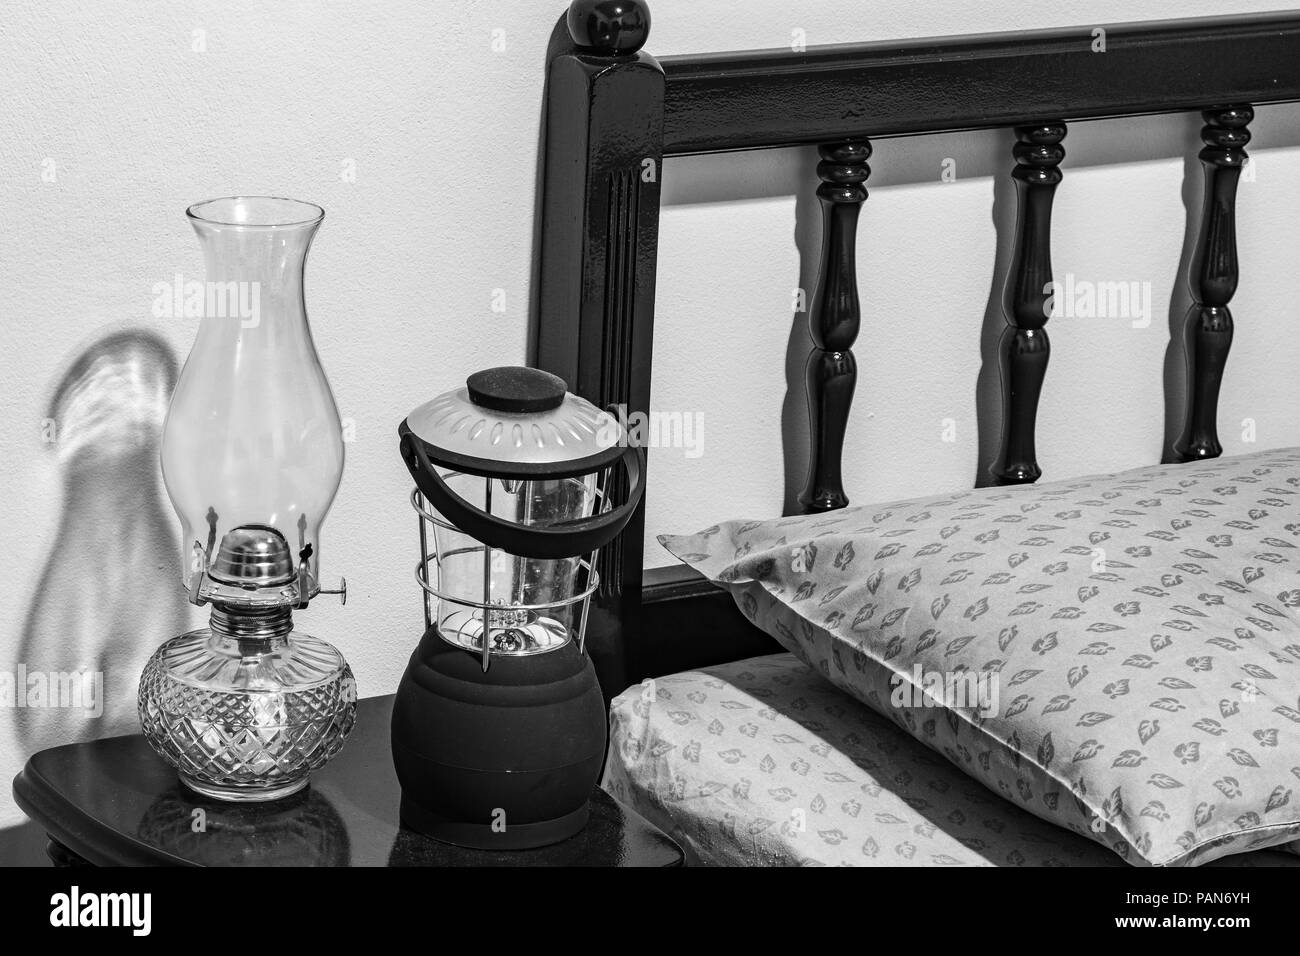 Vintage-wick Kerosin öl Lampe und moderne batteriebetriebene Lampe auf dem Nachttisch, Bett Kopfteil, Kissen, Matratze, Schlafzimmer. Stockfoto